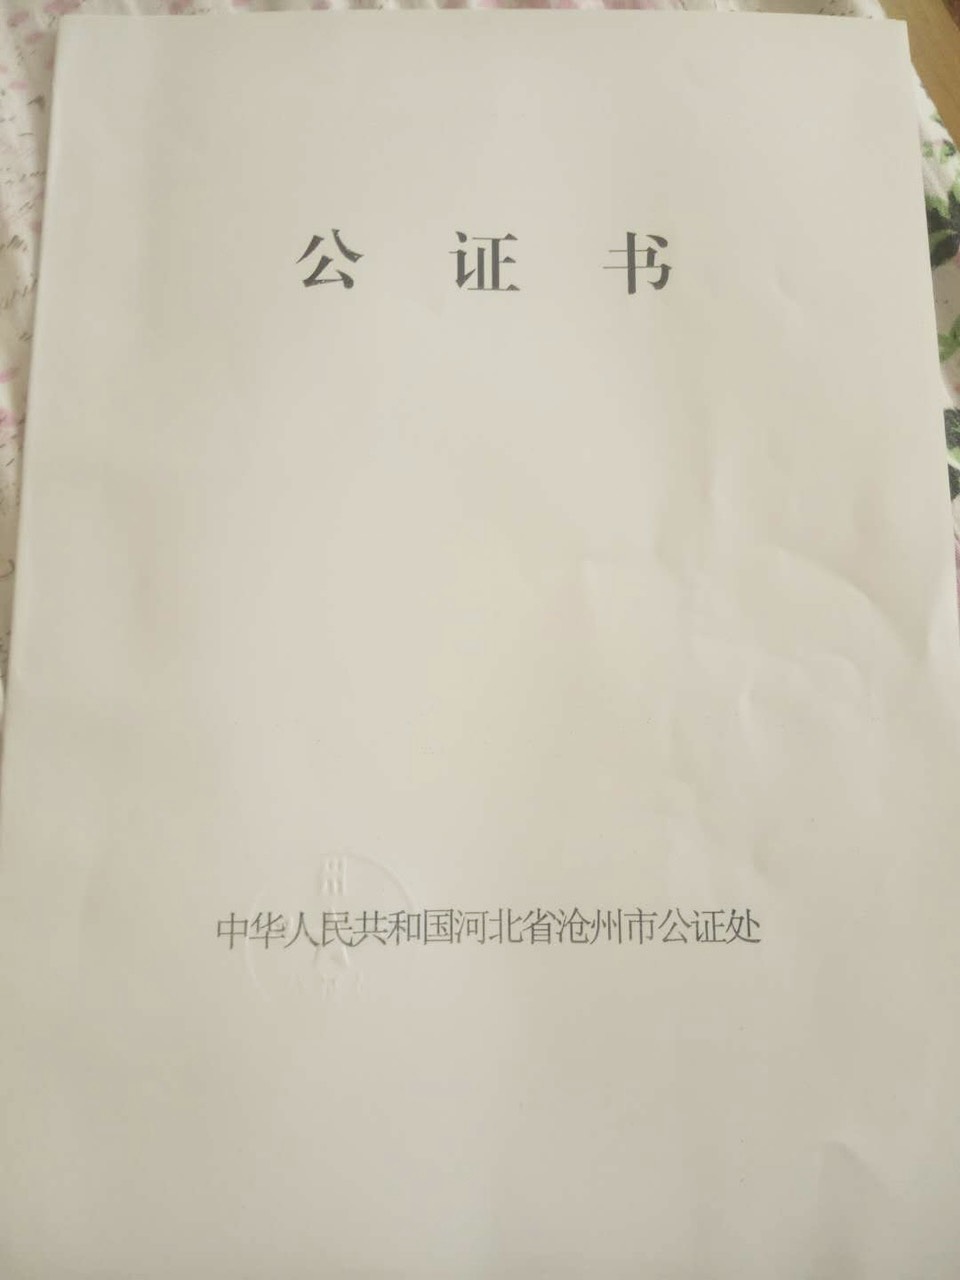 Xin giấy độc thân cho người Trung Quốc ở đâu | ảnh minh họa